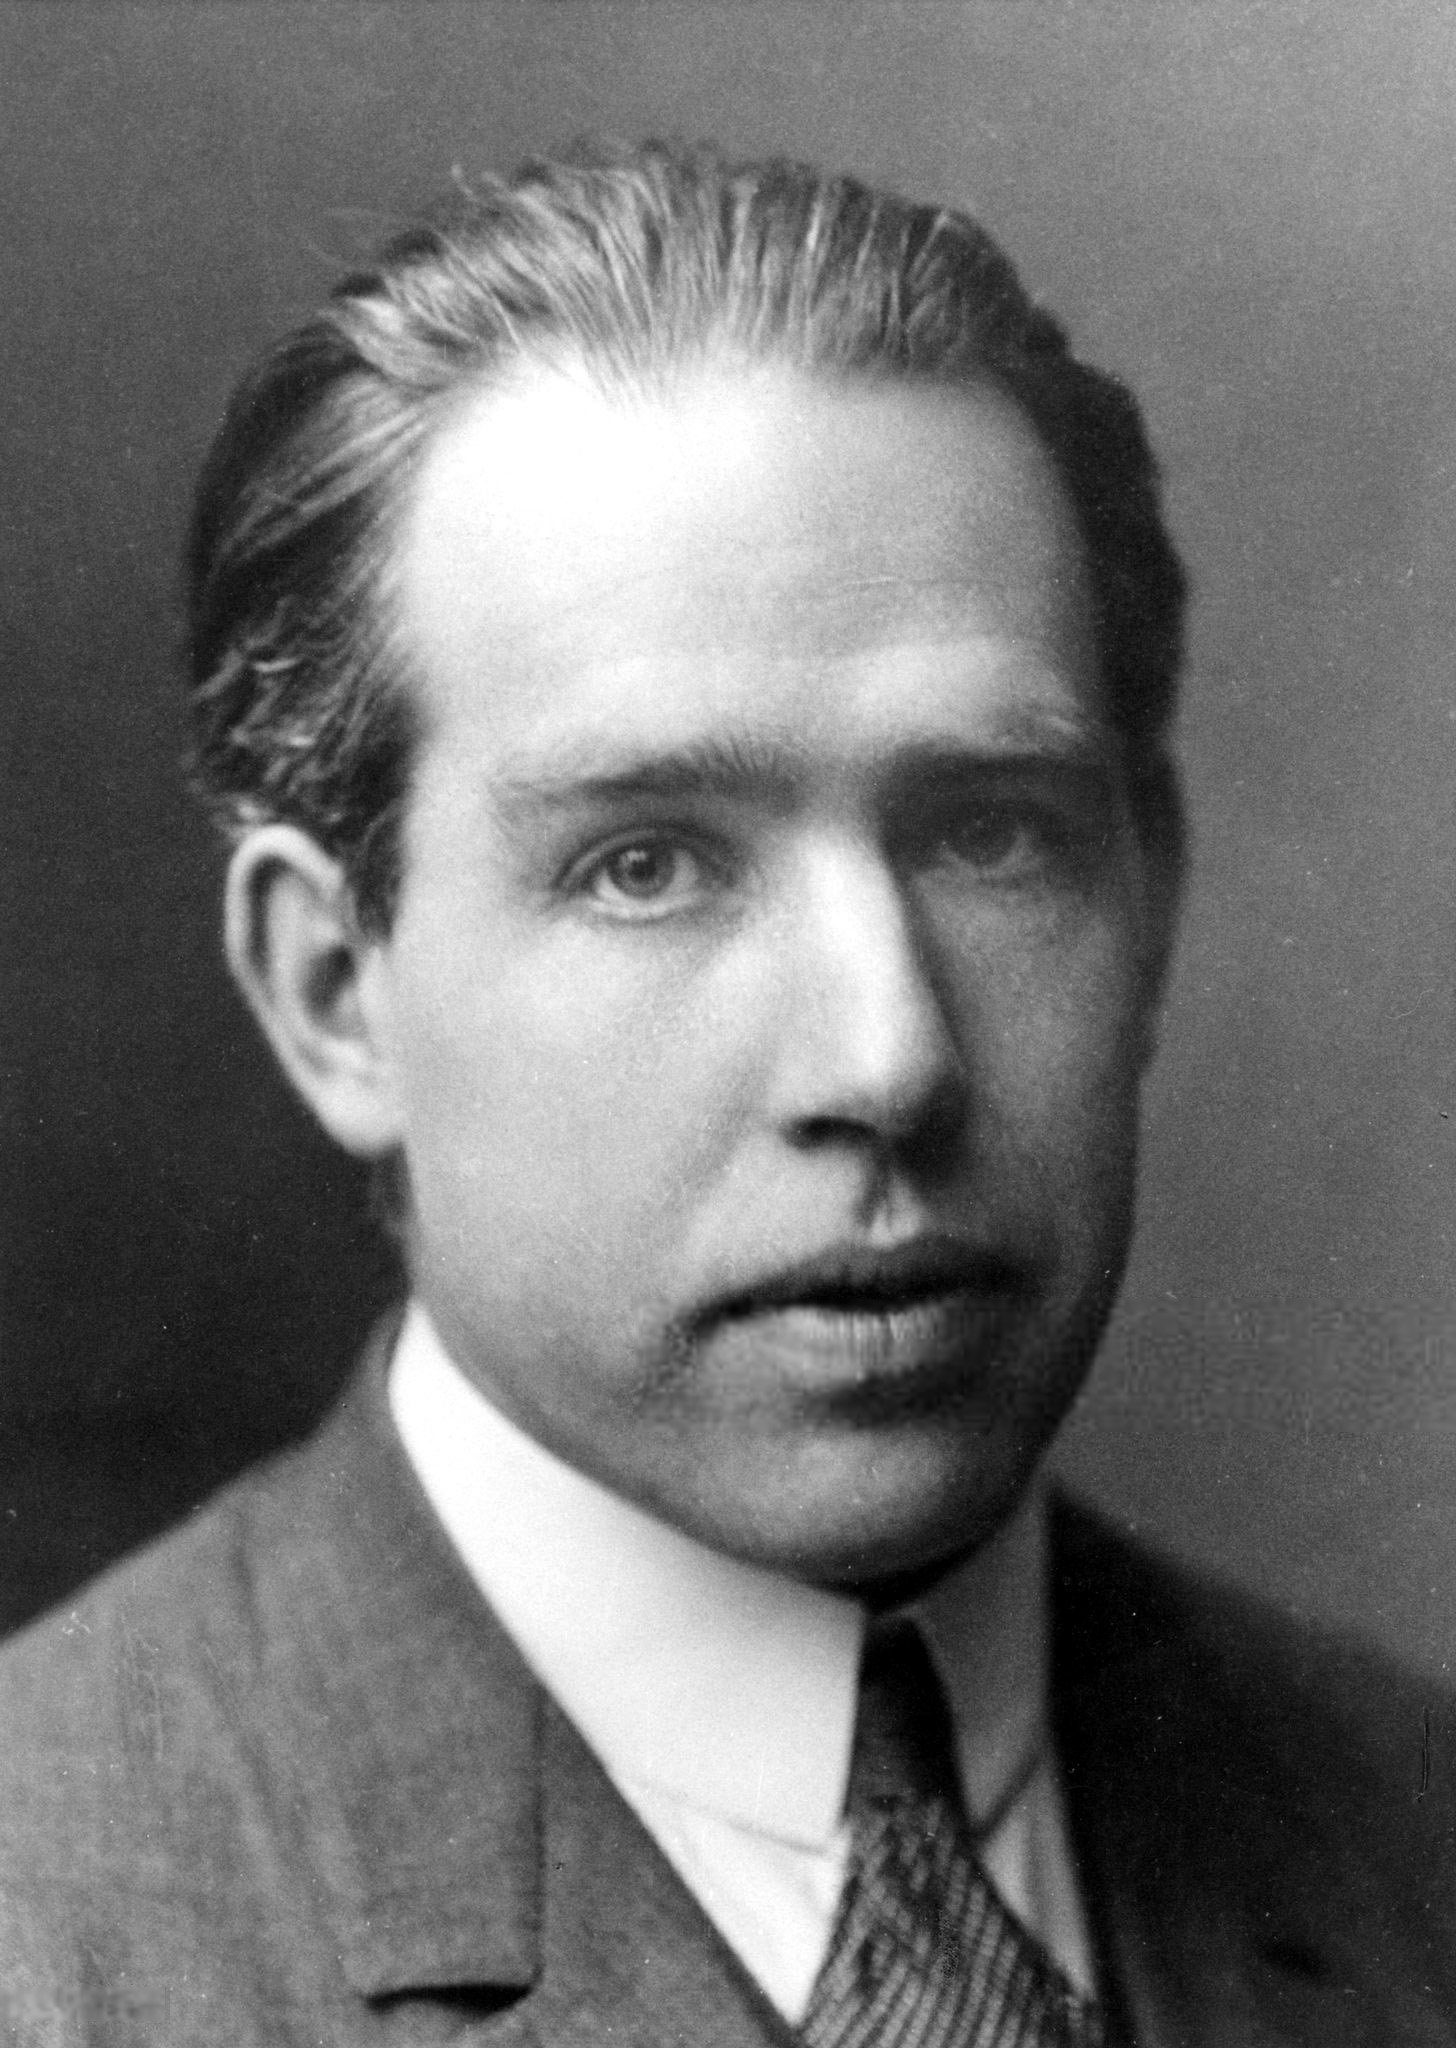 auteur Niels Bohr de la citation Un visiteur de la maison de campagne de Niels Bohr, remarquant un fer à cheval accroché au mur, taquine l'éminent scientifique à propos de cette ancienne superstition. "Serait-il vrai que vous, de tous les peuples, croyez que cela vous portera chance?"